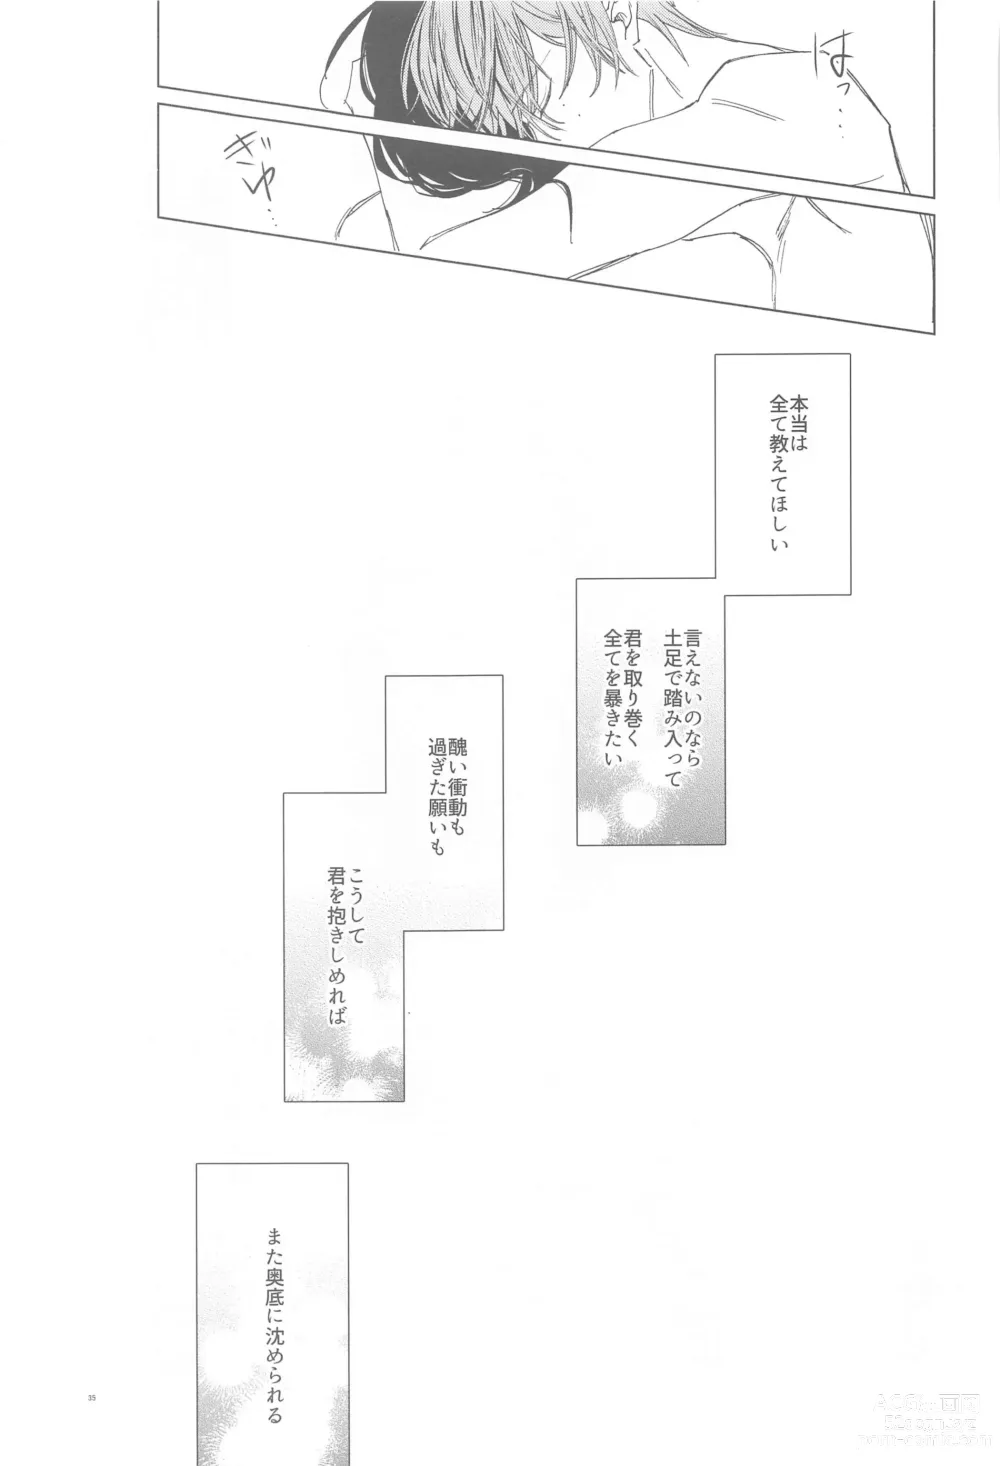 Page 34 of doujinshi Ai Yue ni! Sabishi Magire no Zero Kyori Shageki